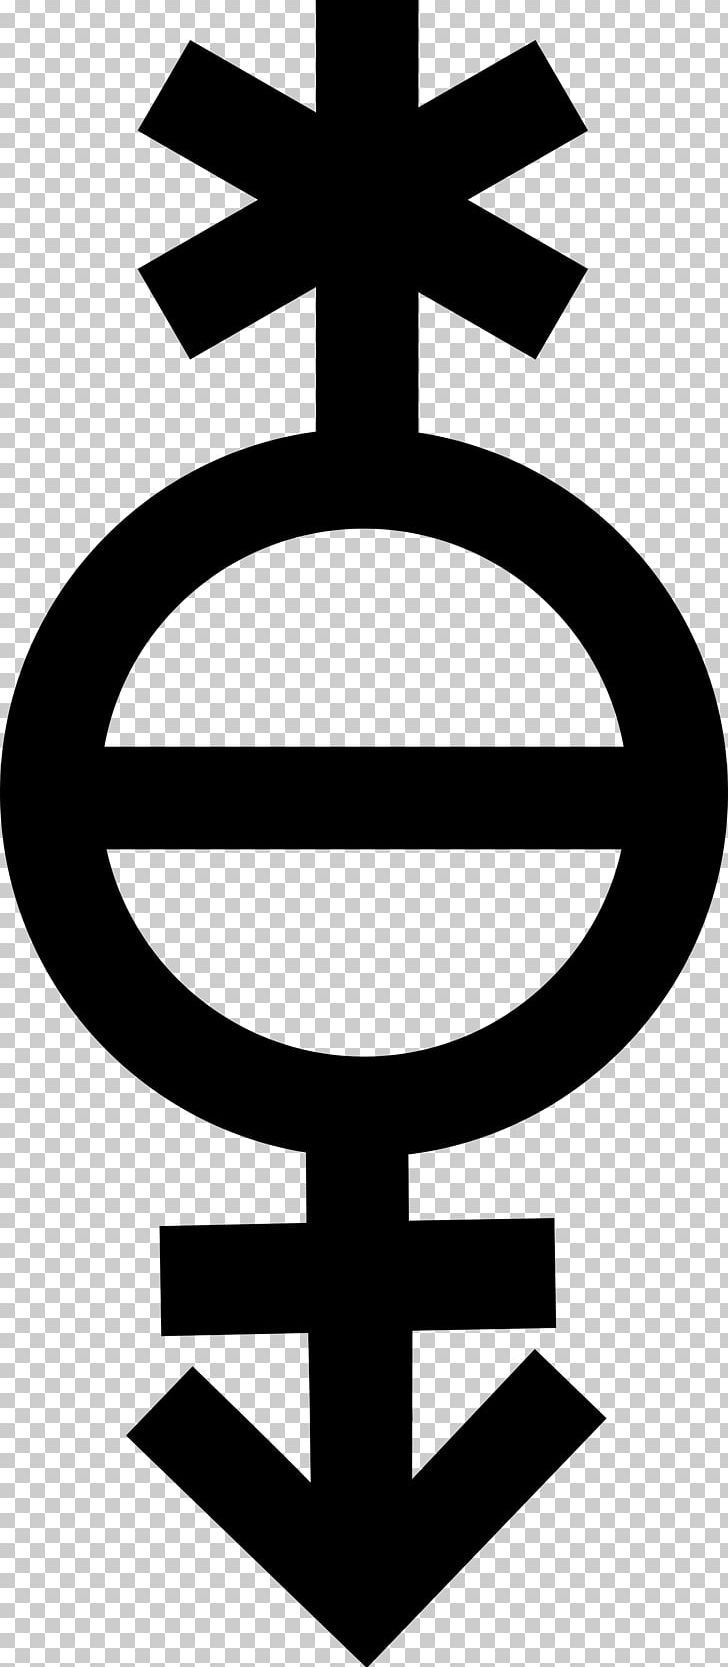 Gender Identity Chart Symbols